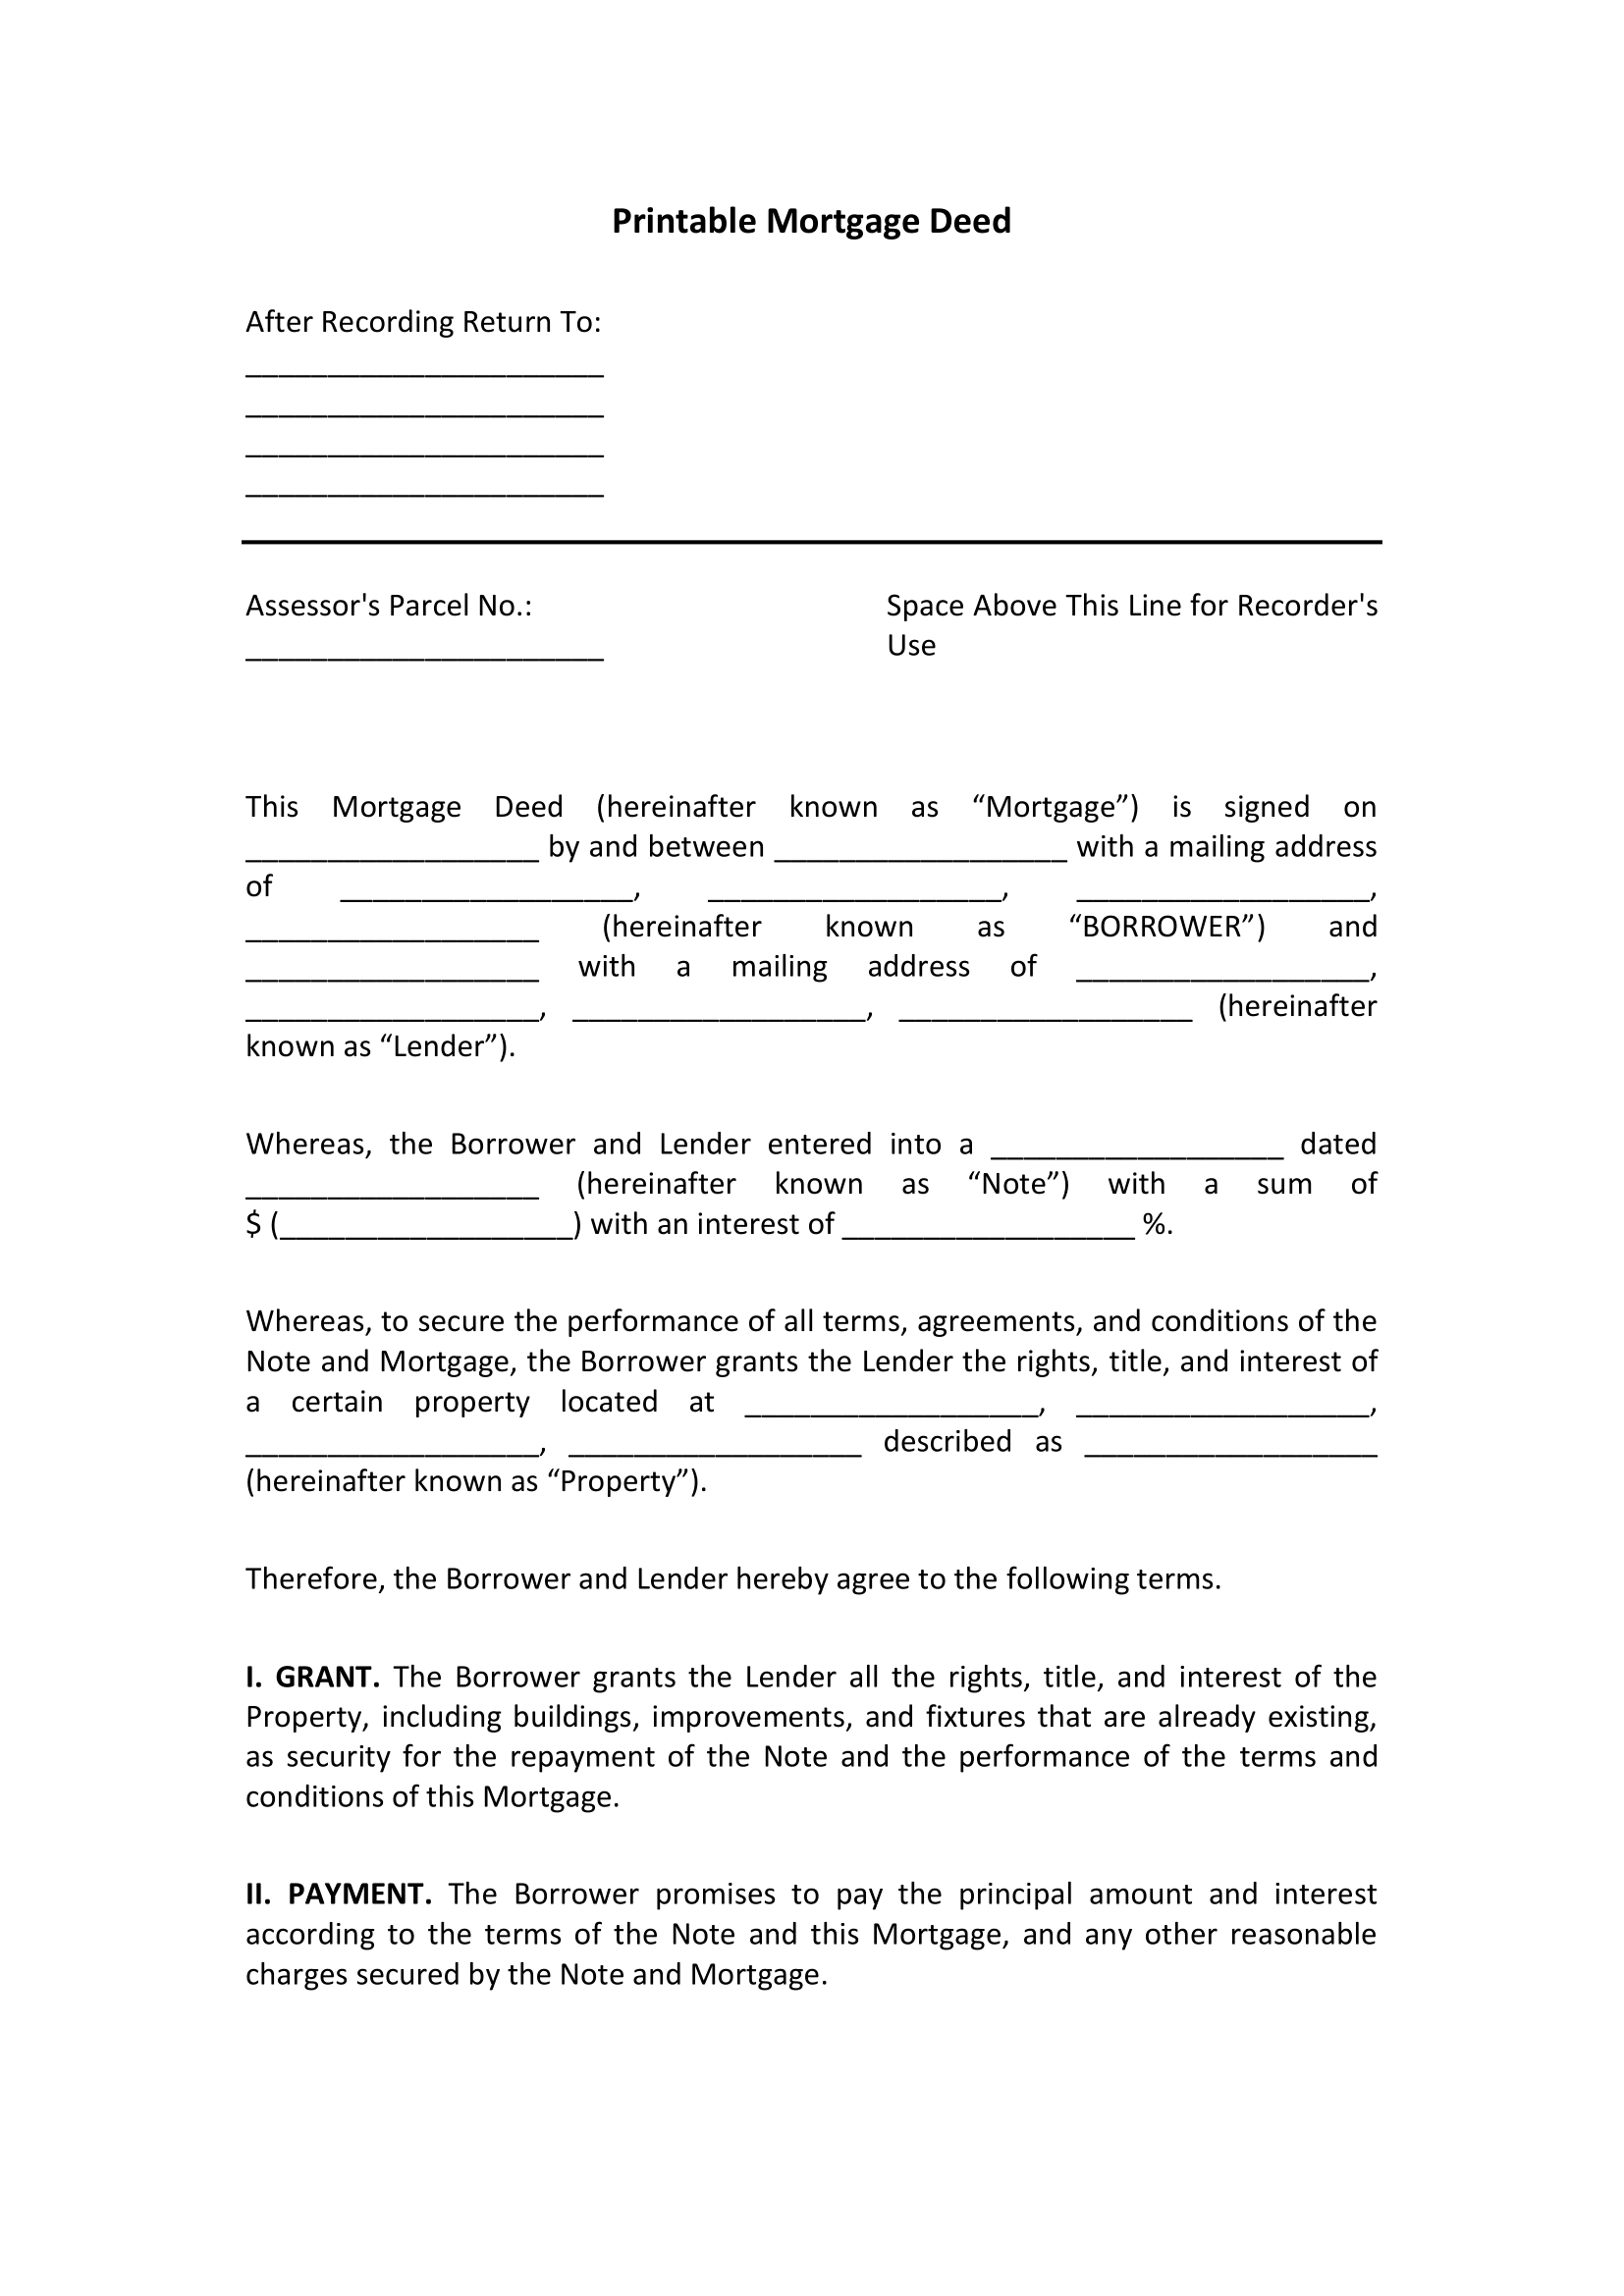 Printable Mortgage Deed Form